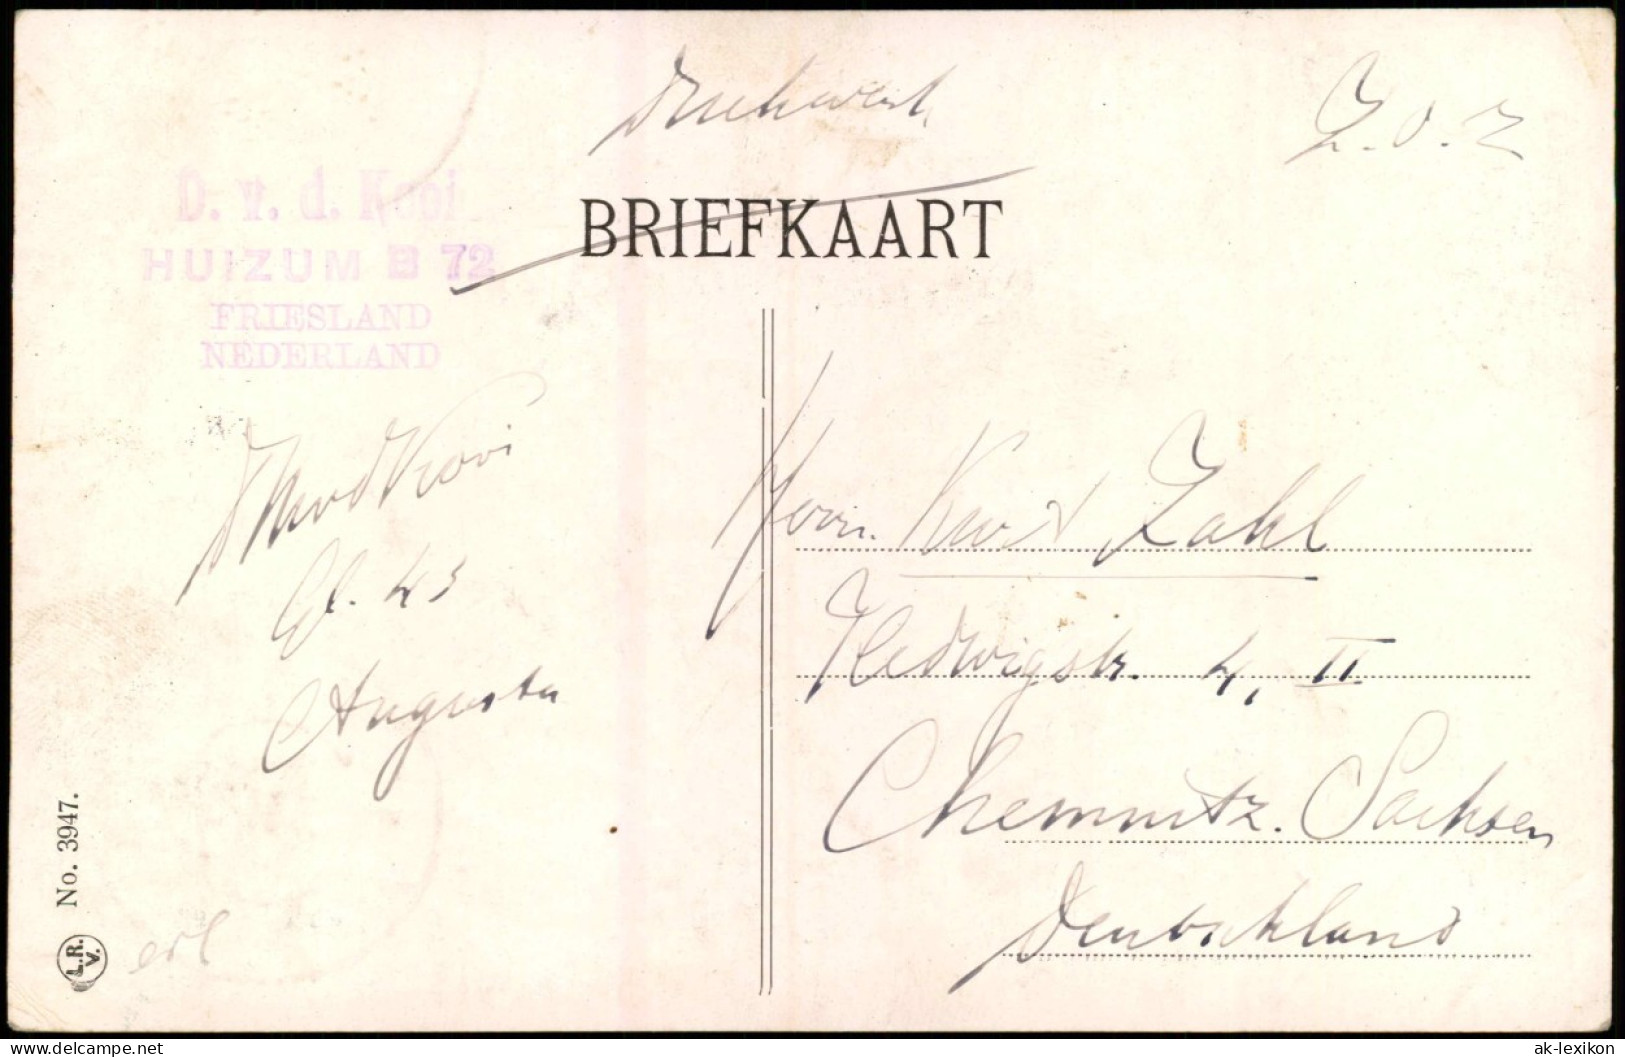 Postkaart Leeuwarden Voorstreek, Geschäfte 1913 - Leeuwarden